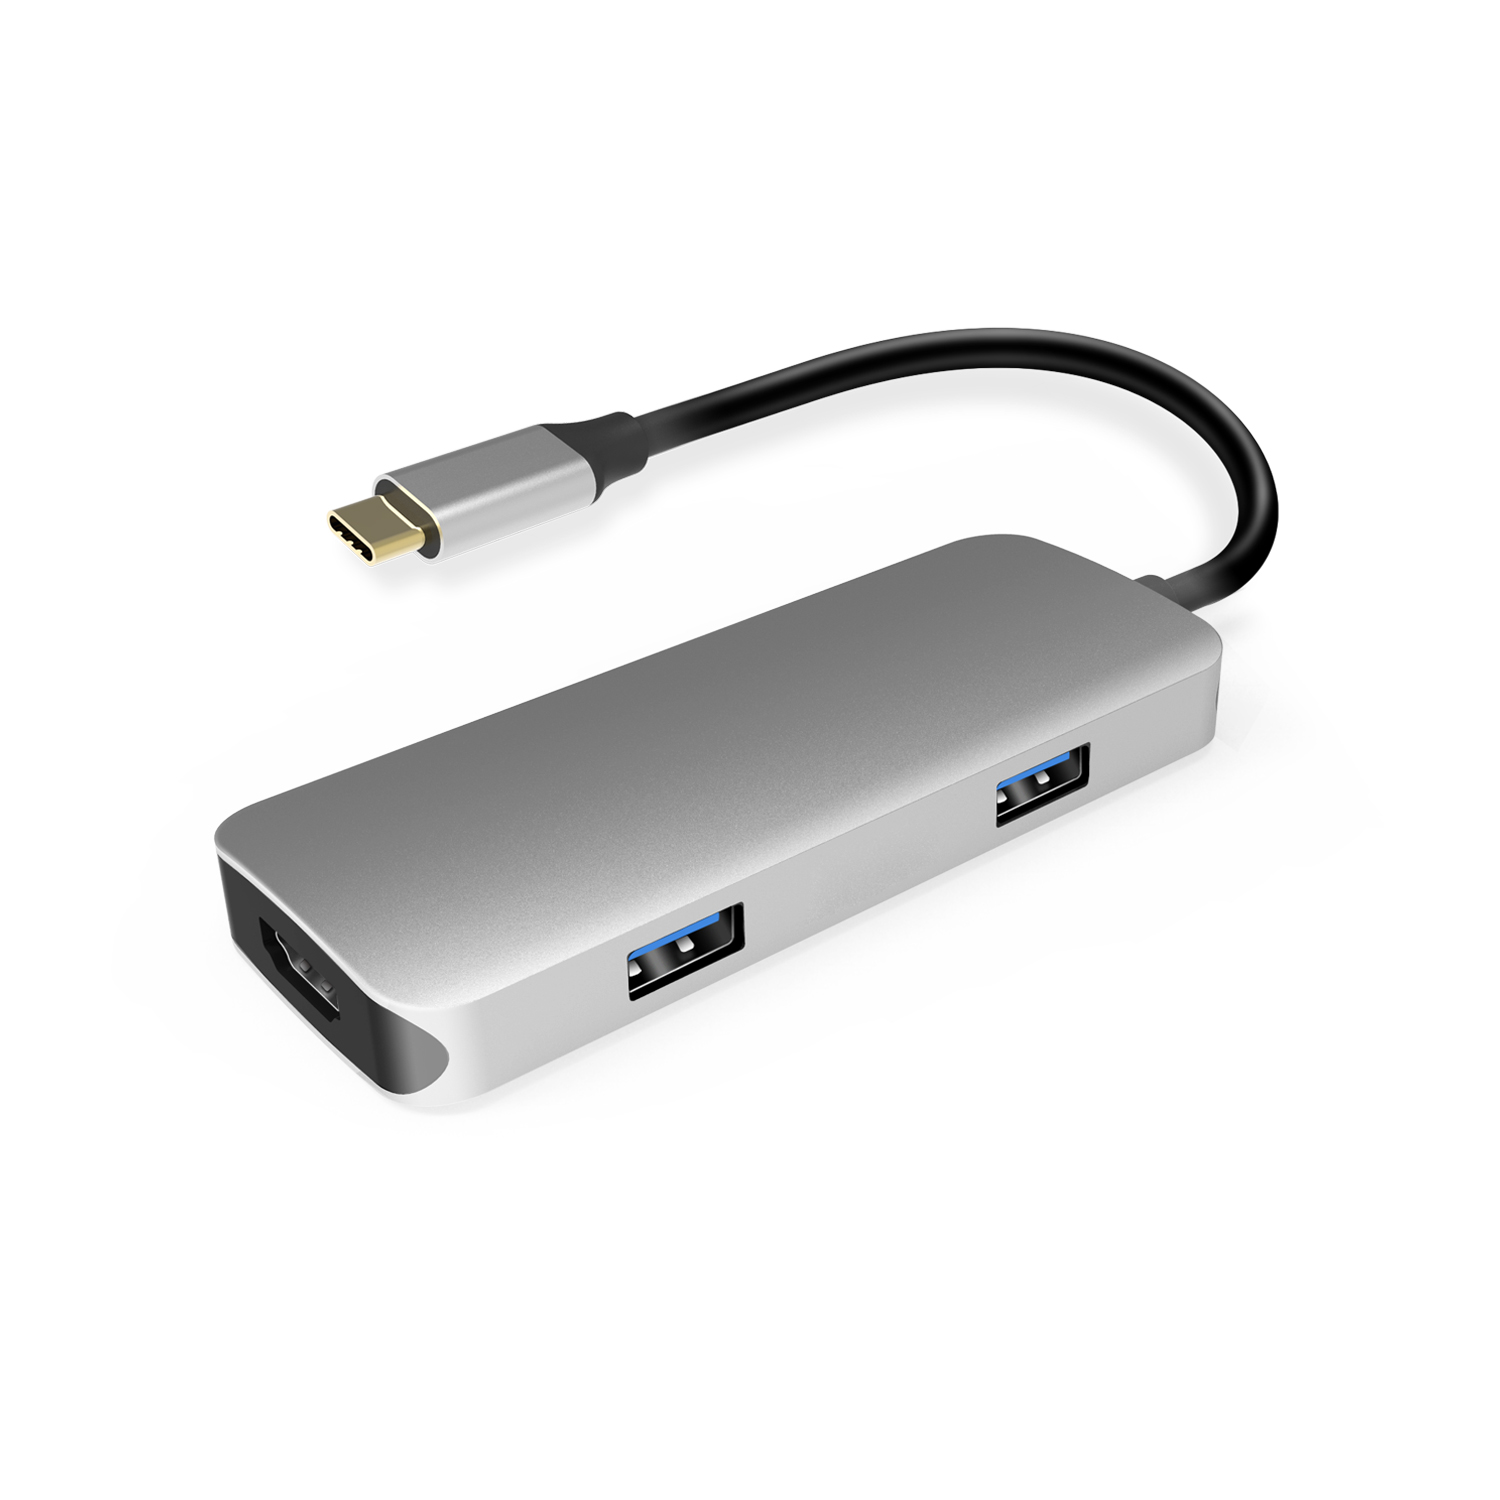 UC0402 USB-C HUB (1 x USB C / 2 x USB 3.0 / 1 x HDMI / SD/TF Card Reader)